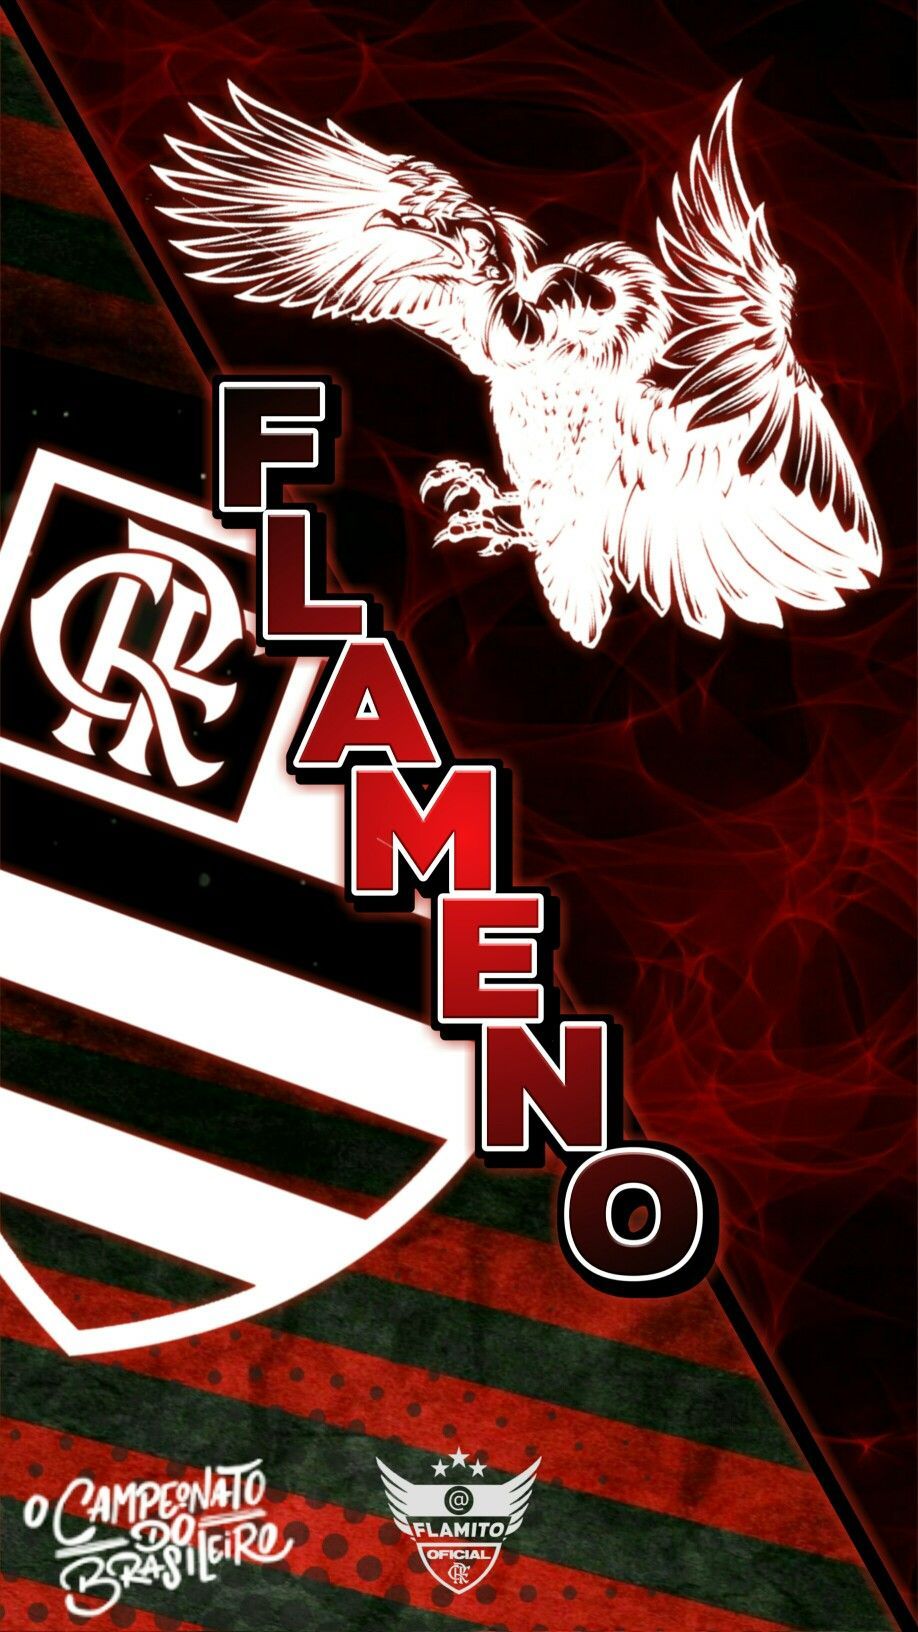 Flamengo Wallpaper / Papel de Parede em 2020. Flamengo wallpaper, Fotos de flamengo, Flamengo